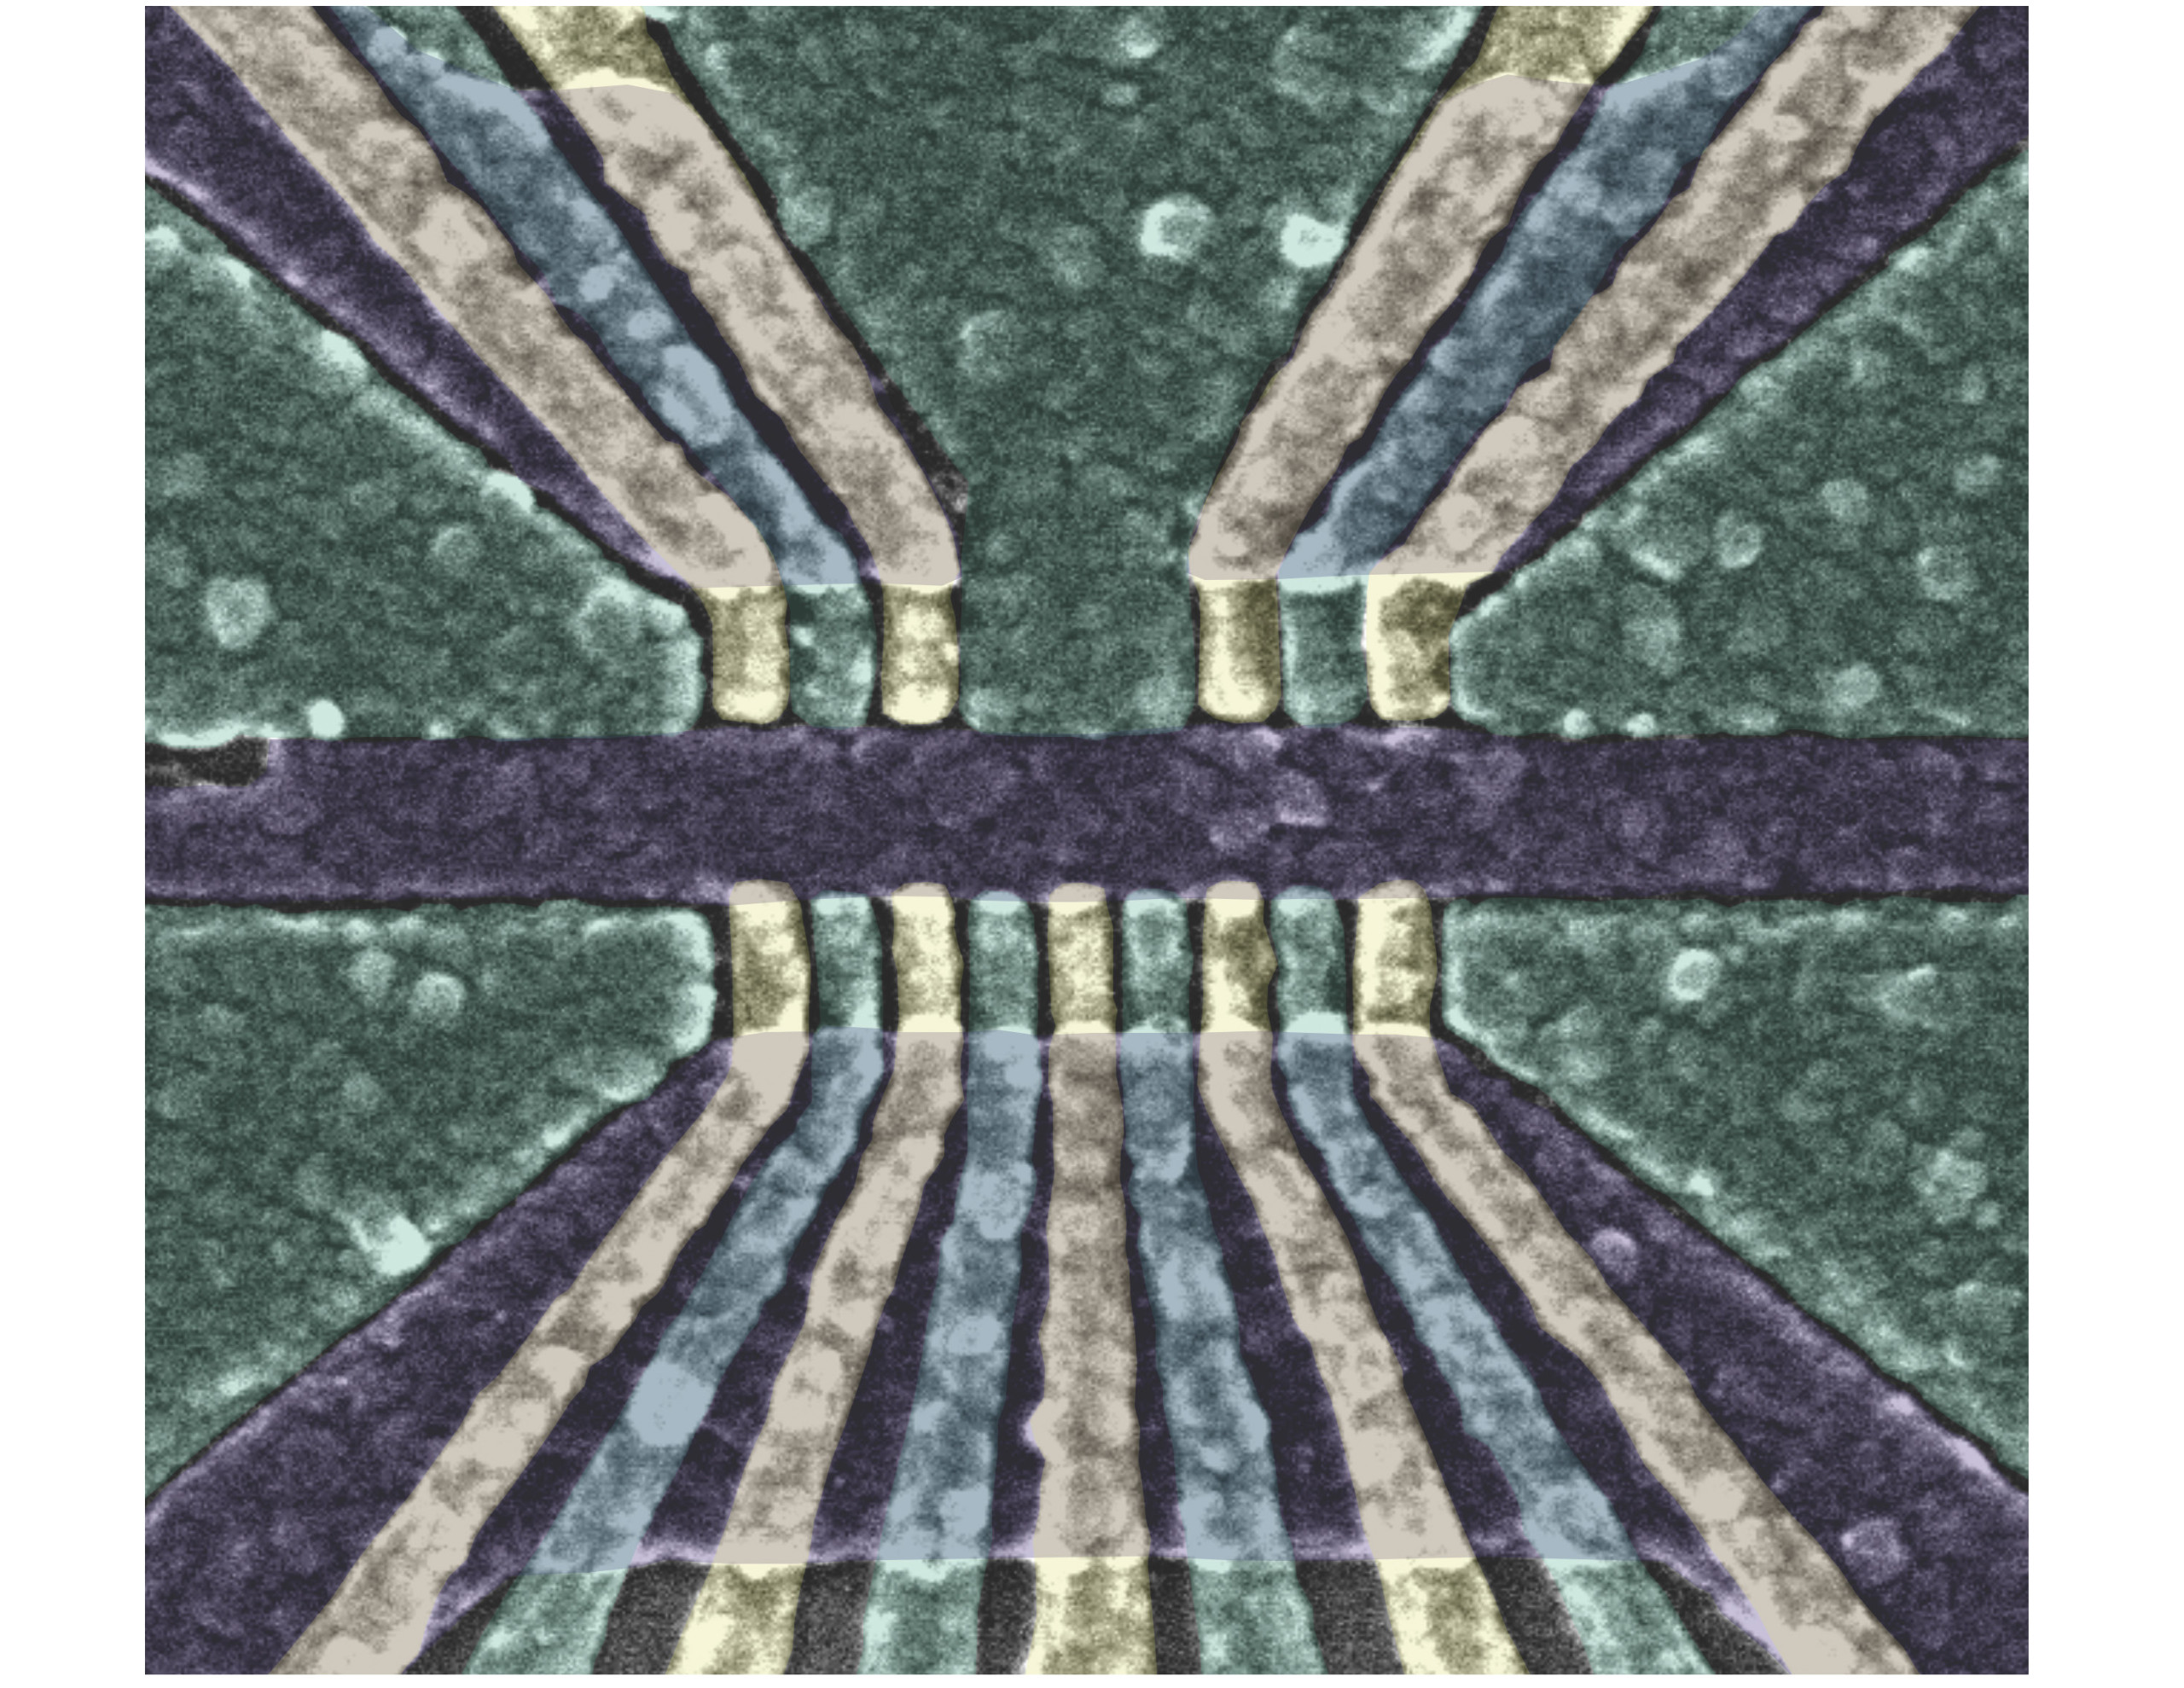 是伪彩色扫描电子显微摄影的量子位结构用于这项研究。成像面积约1500纳米。相比之下,人的头发是50000至100000纳米宽。